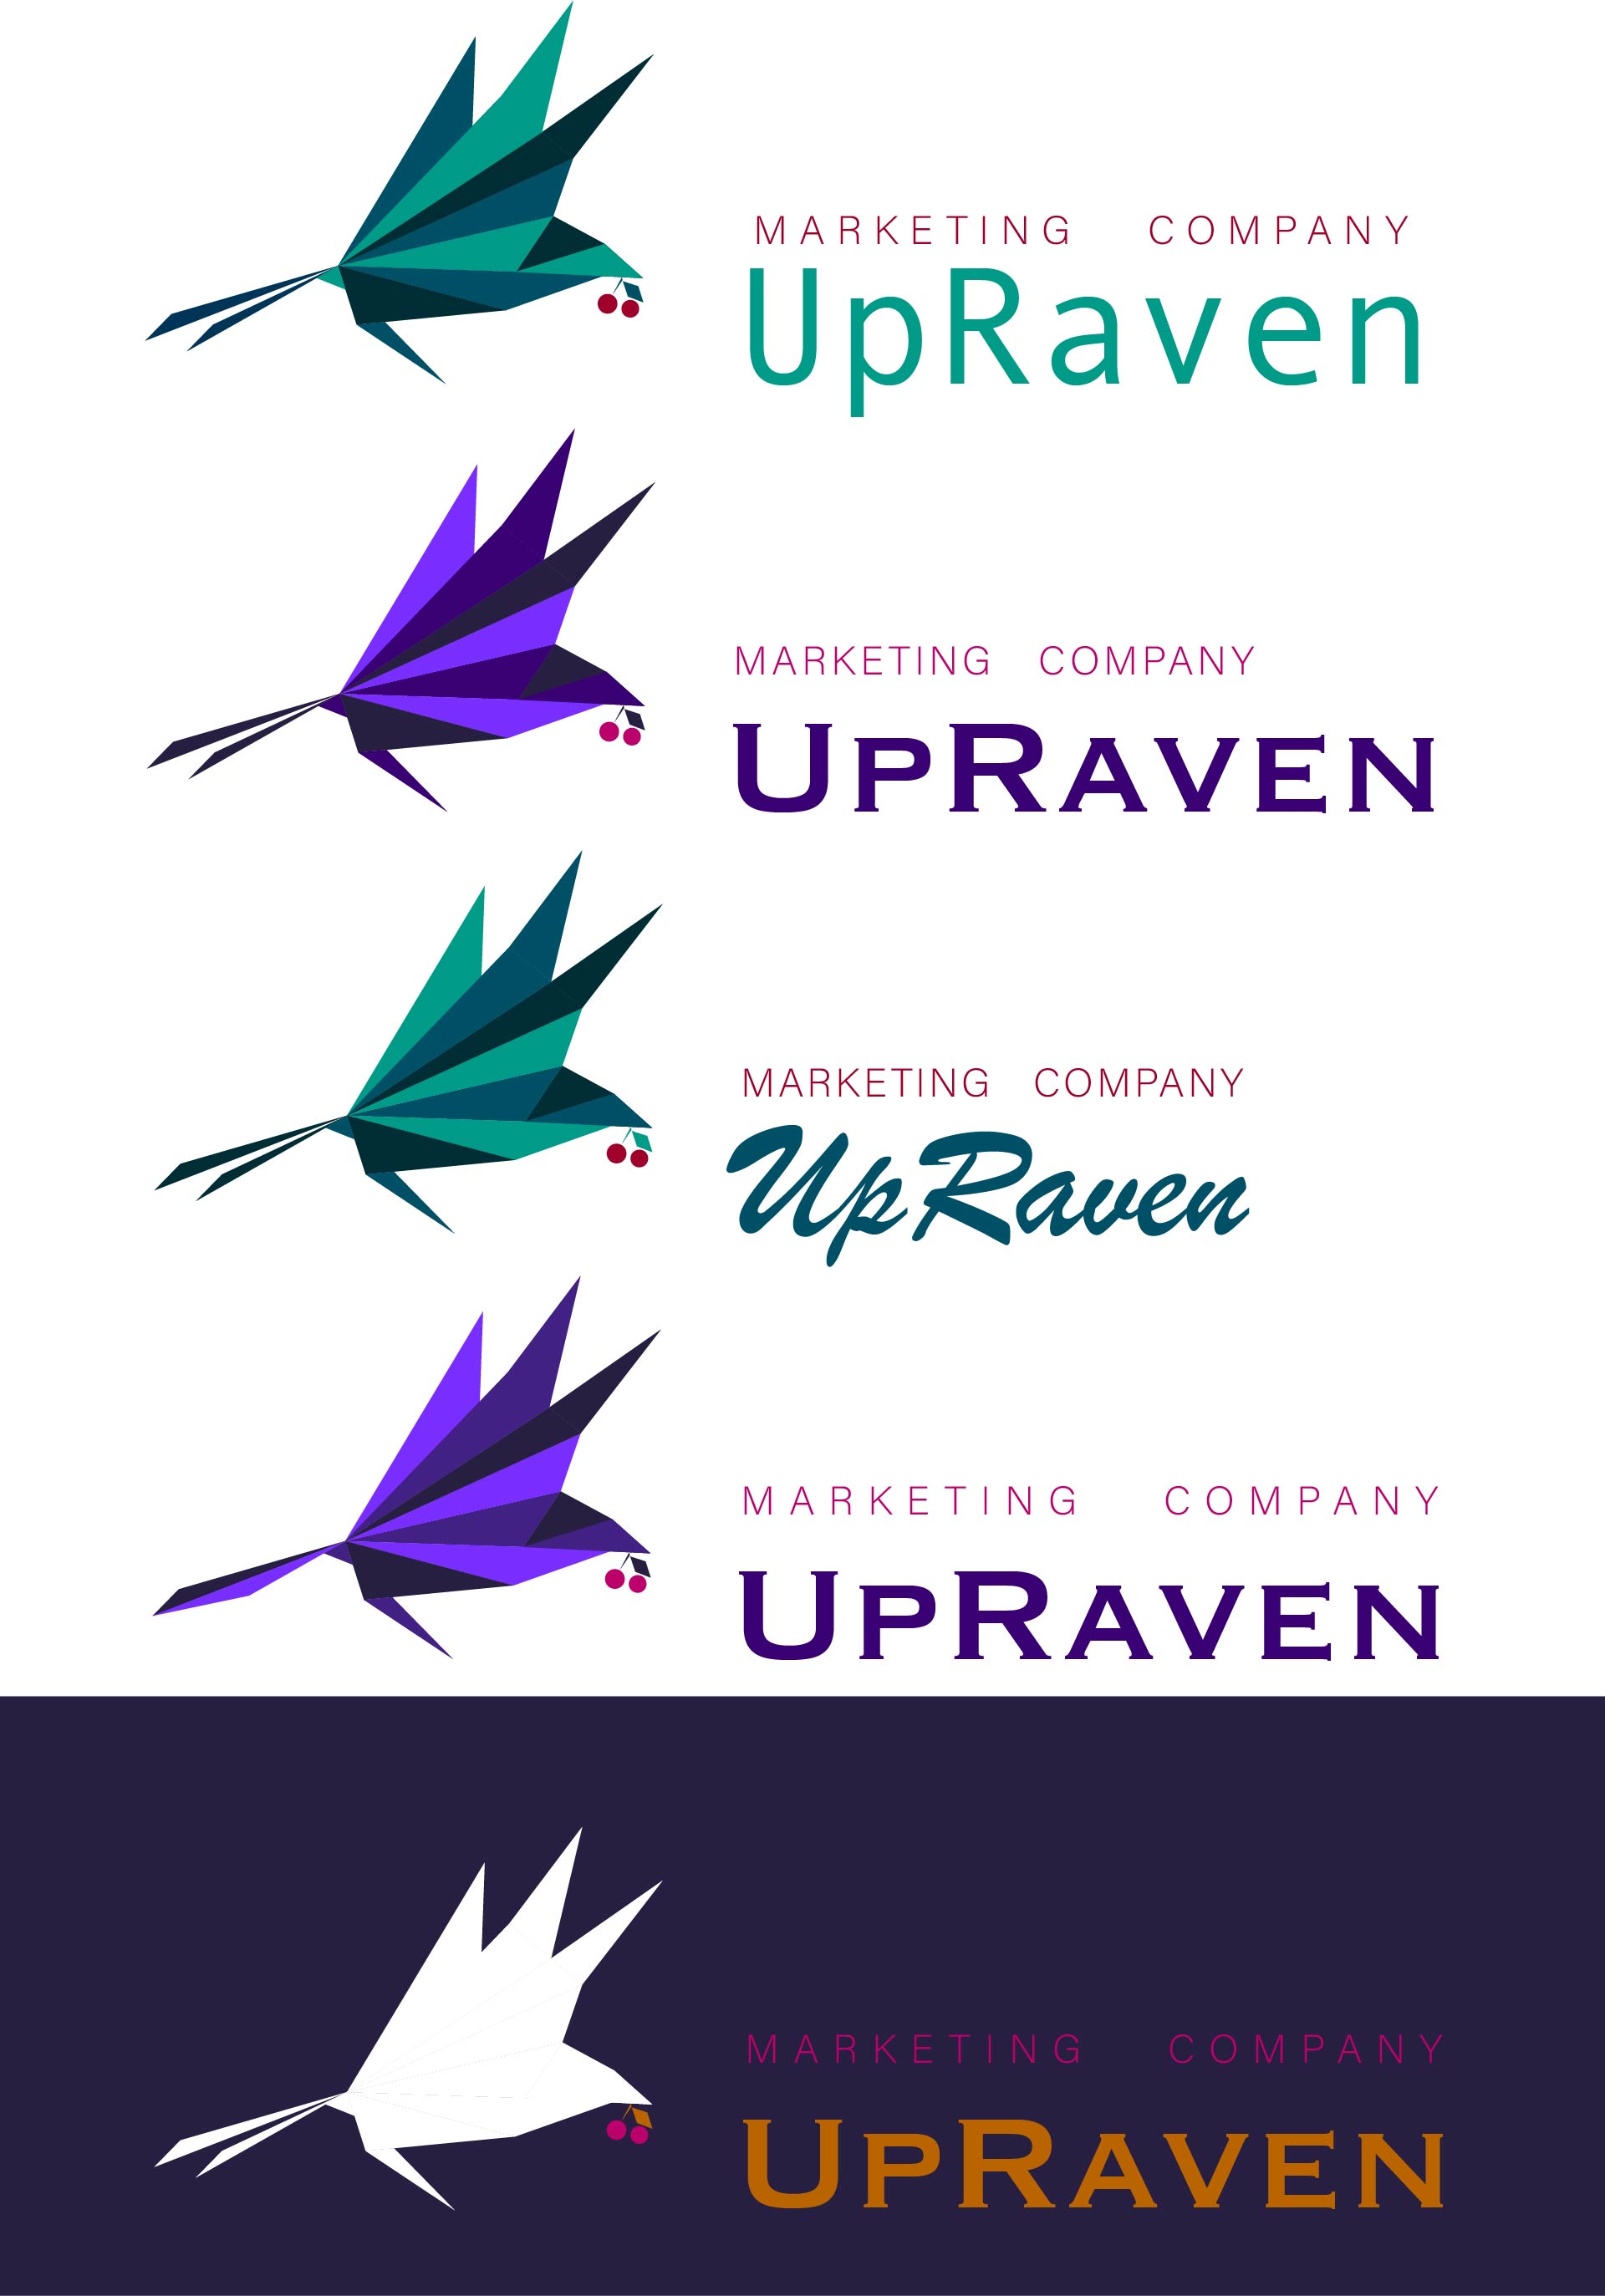 UpRaven variants